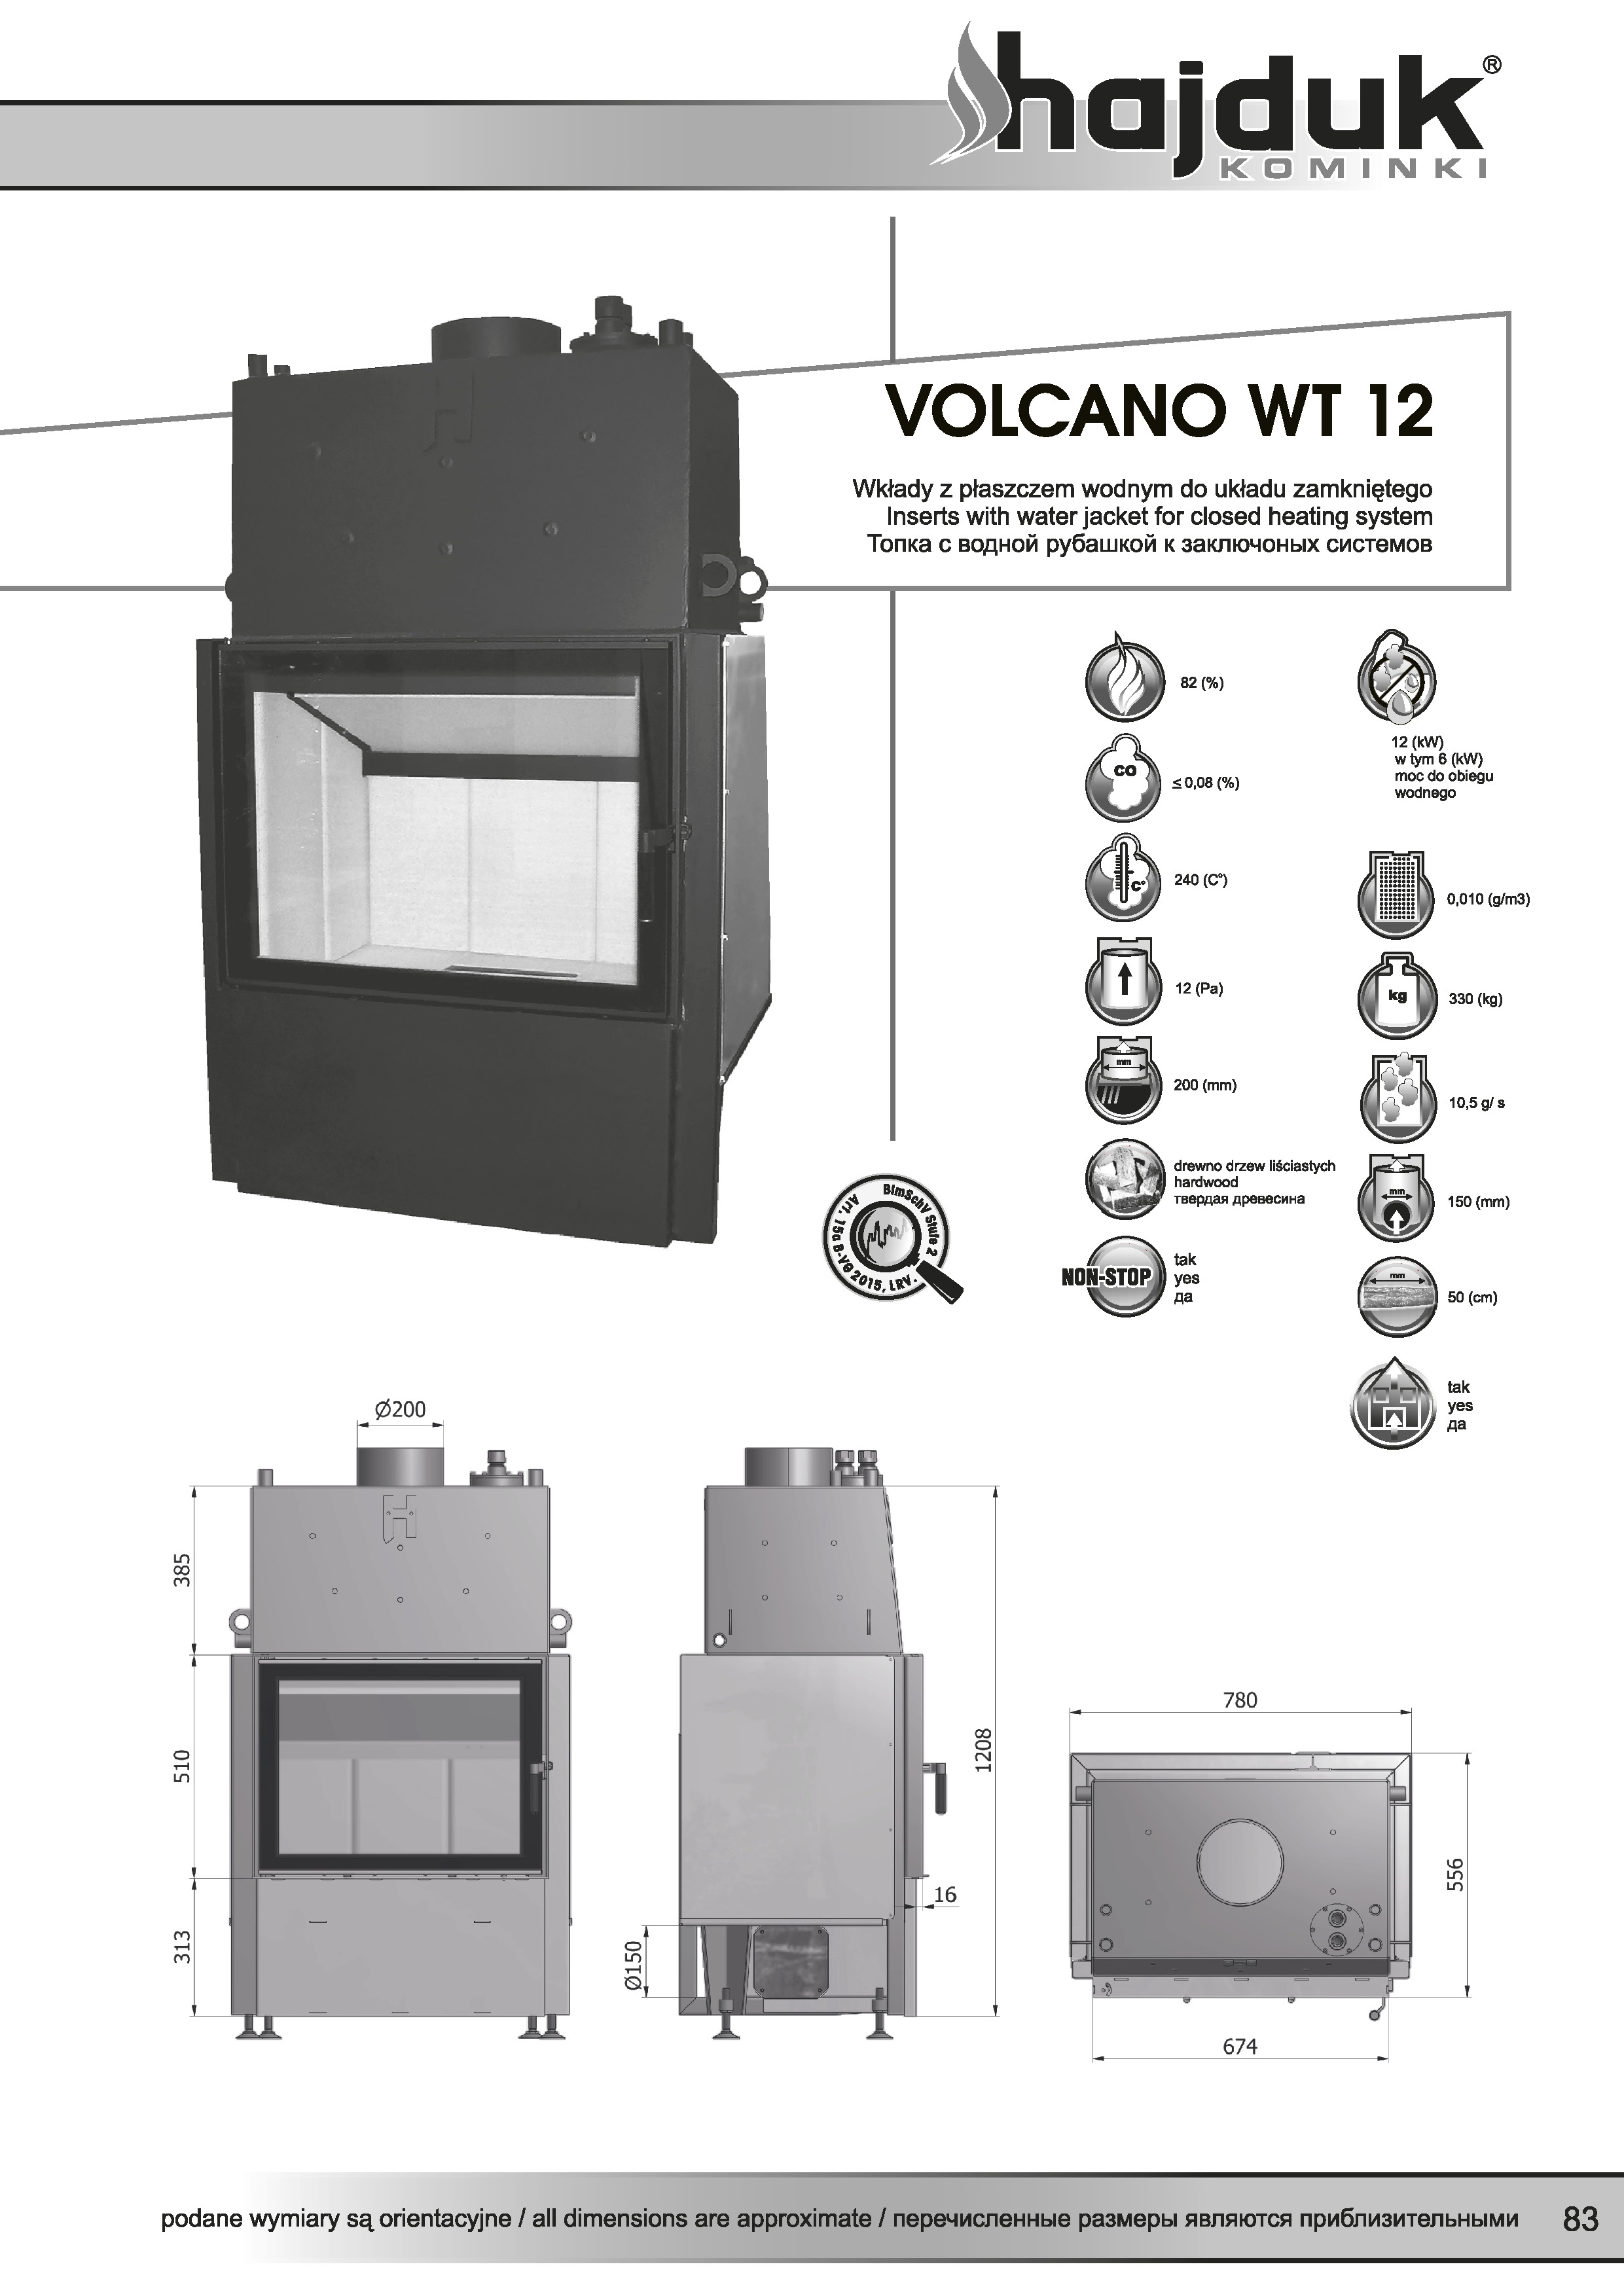 Volcano%20WT 12%20 %20karta%20techniczna - Wkład kominkowy Hajduk  Volcano WT 12